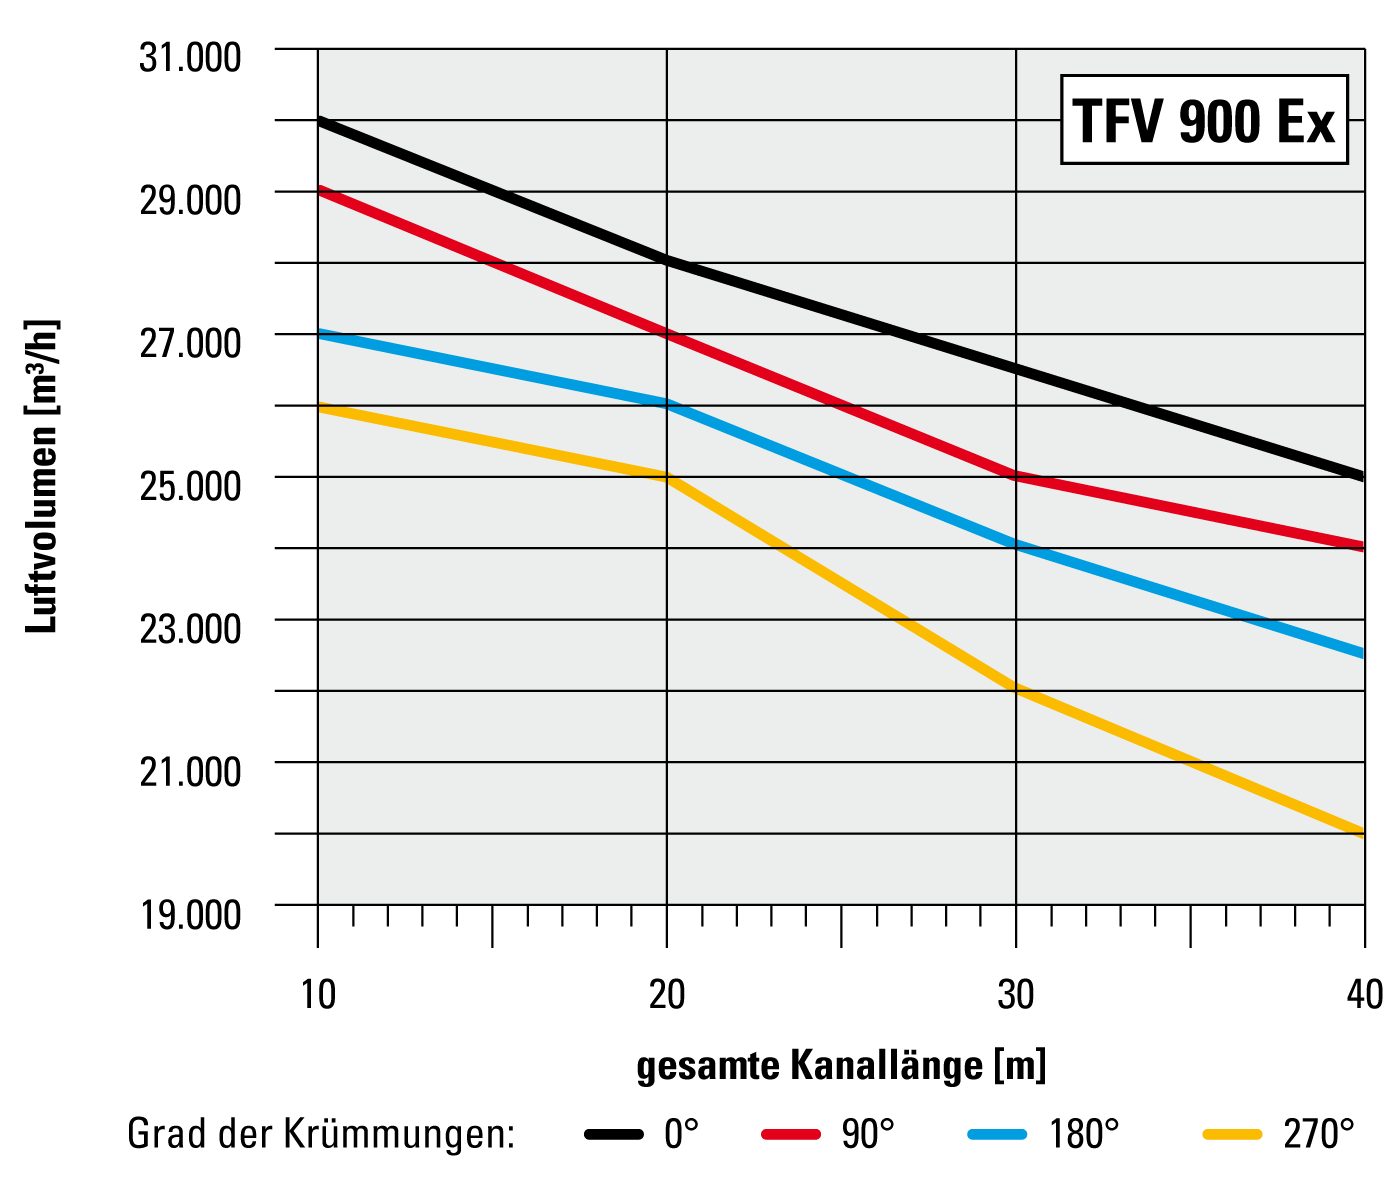 Luftvolumen im Verhältnis zur Kanallänge TFV 900 Ex